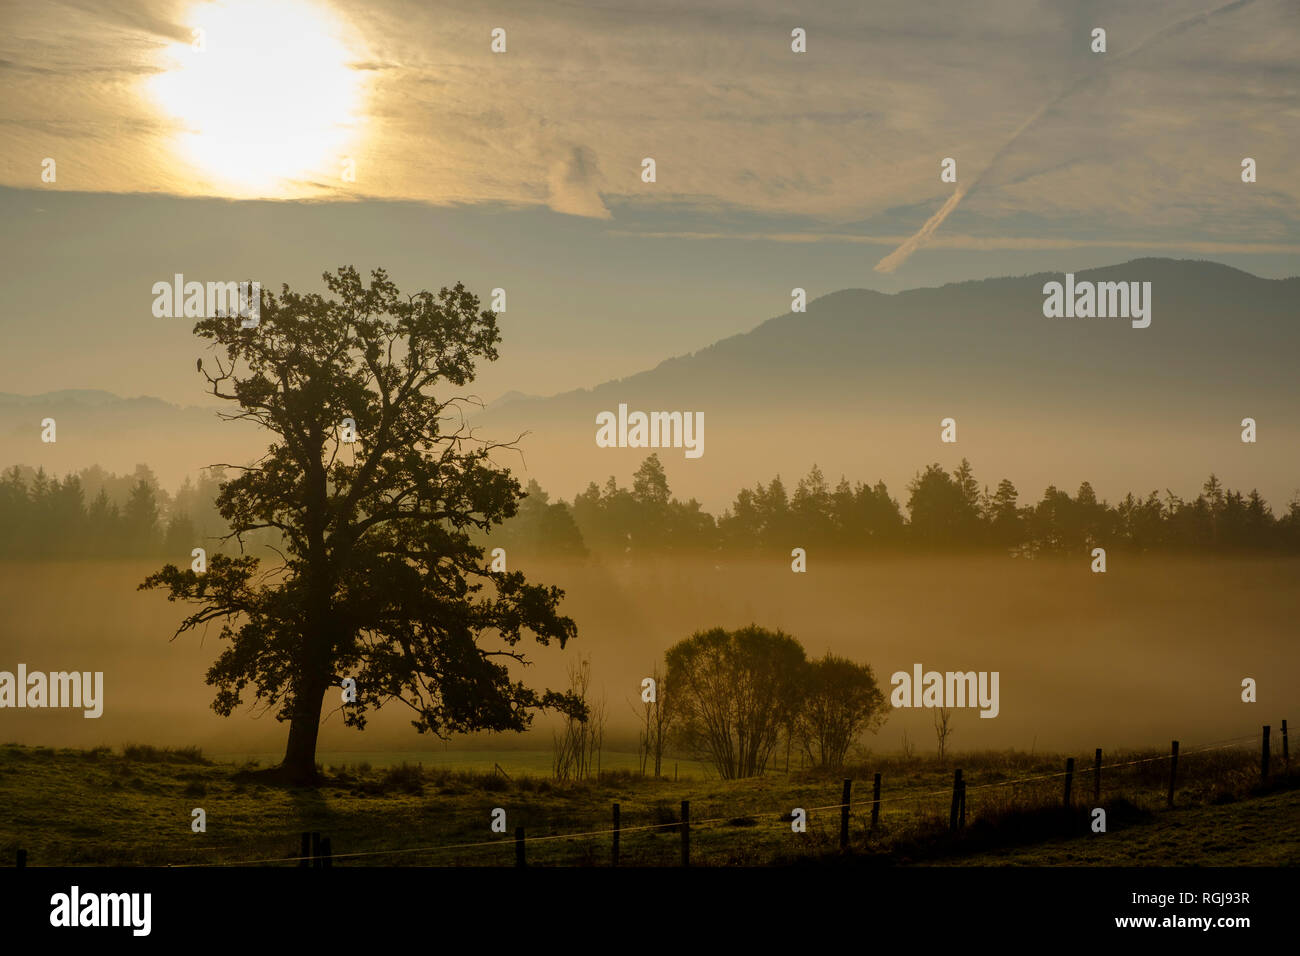 Germany, Nantesbuch, oak tree at morning light Stock Photo